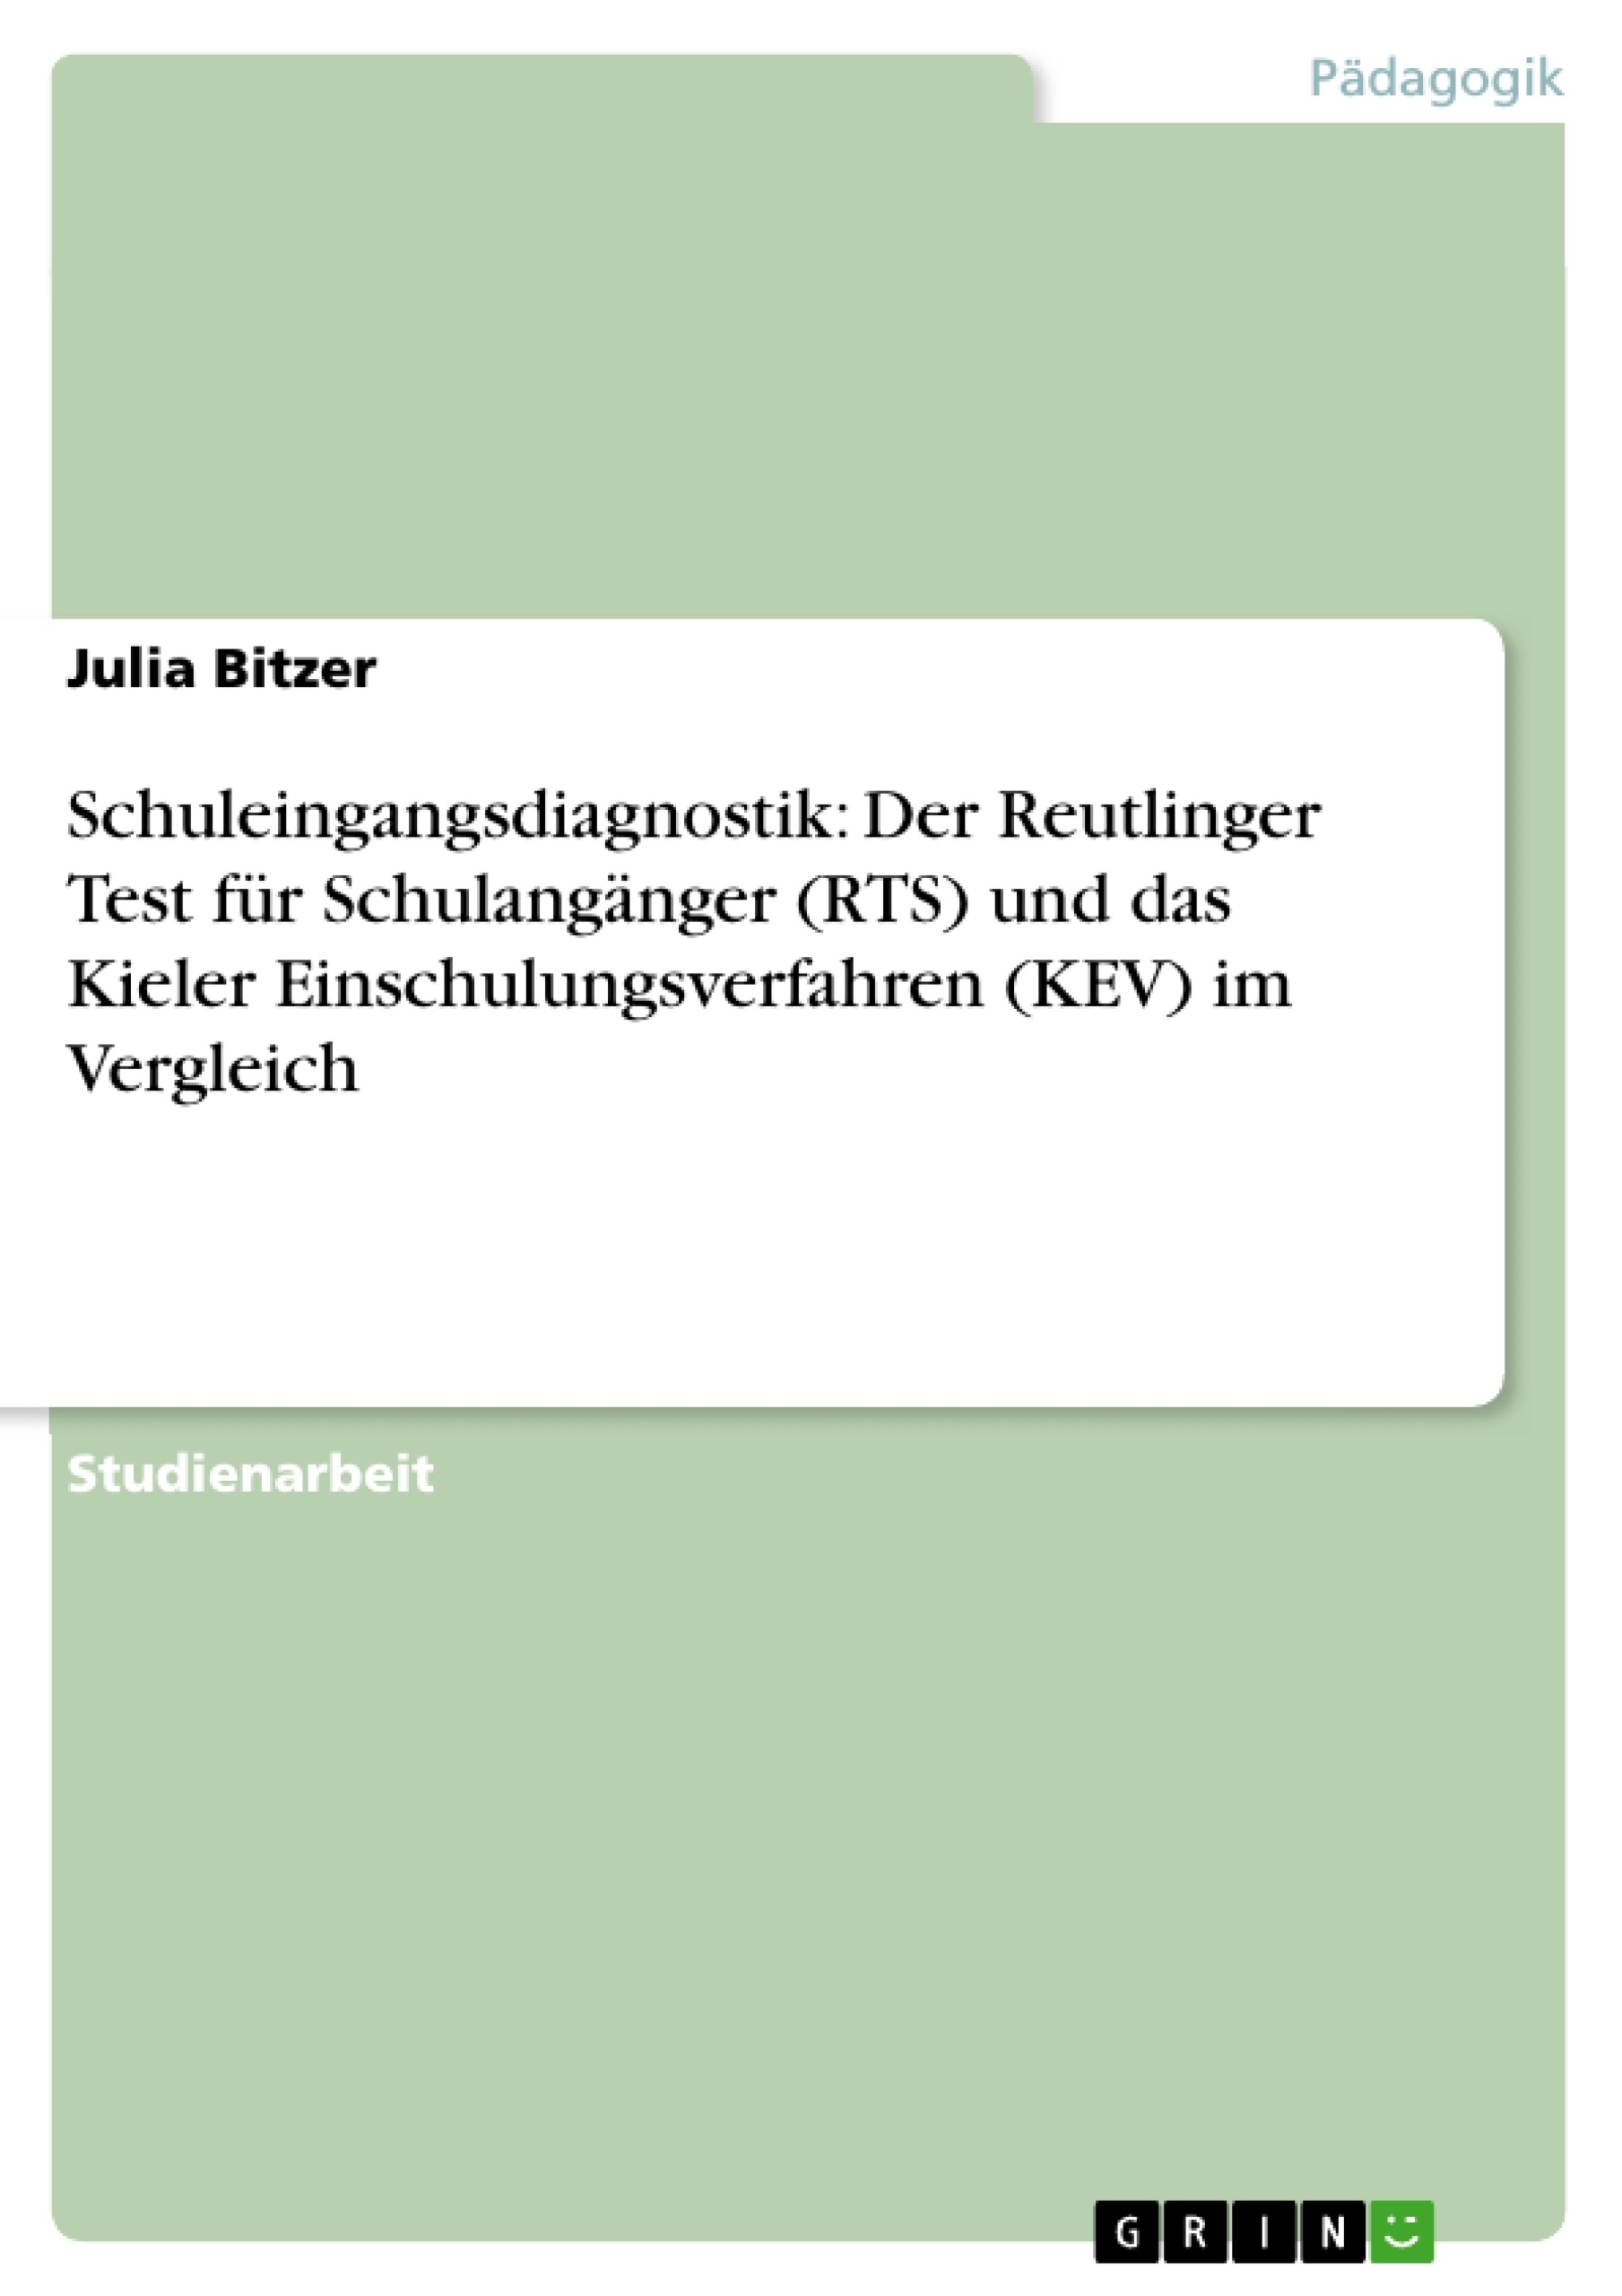 Title: Schuleingangsdiagnostik: Der Reutlinger Test für Schulangänger (RTS) und das Kieler Einschulungsverfahren (KEV) im Vergleich